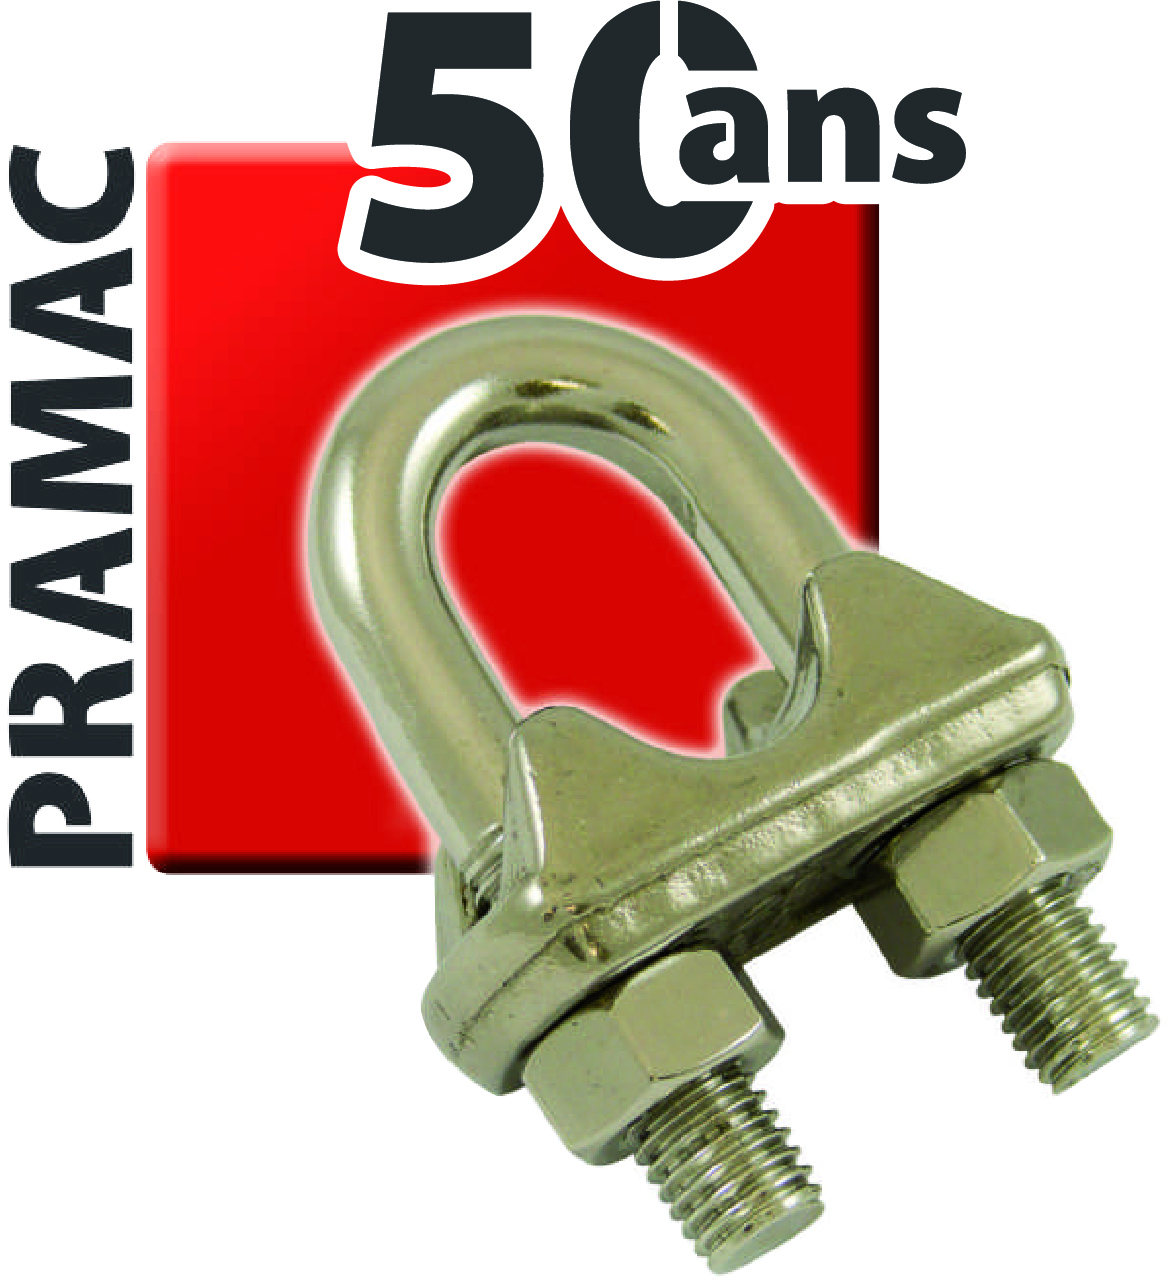 PRAMAC-50 ANS -LOGO